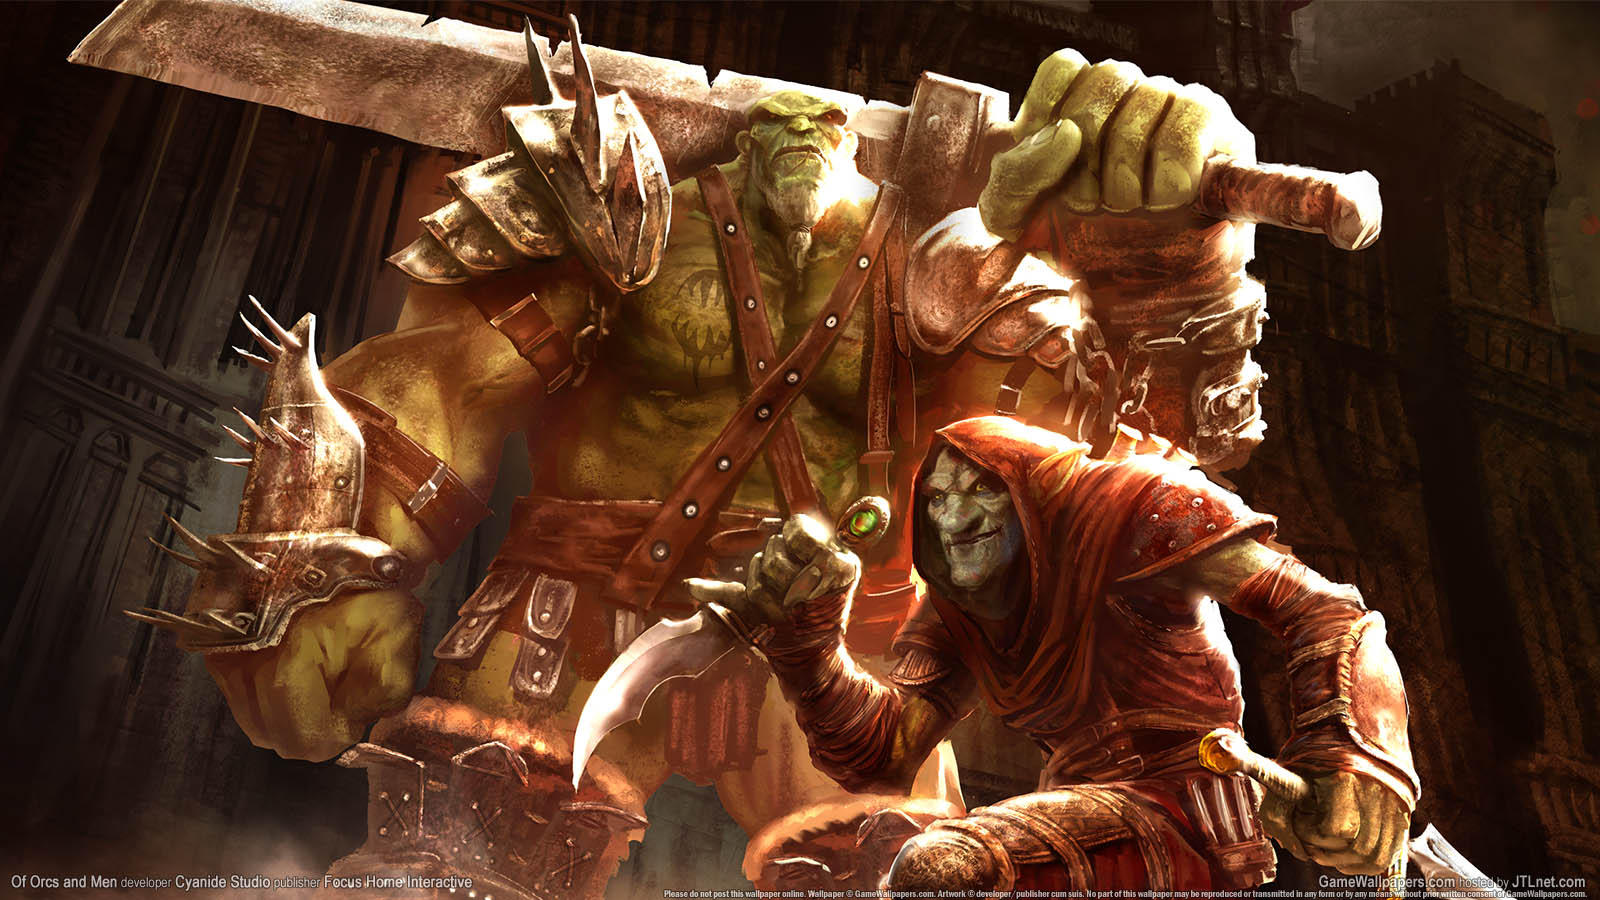 Of Orcs and Men fond d'cran 01 1600x900